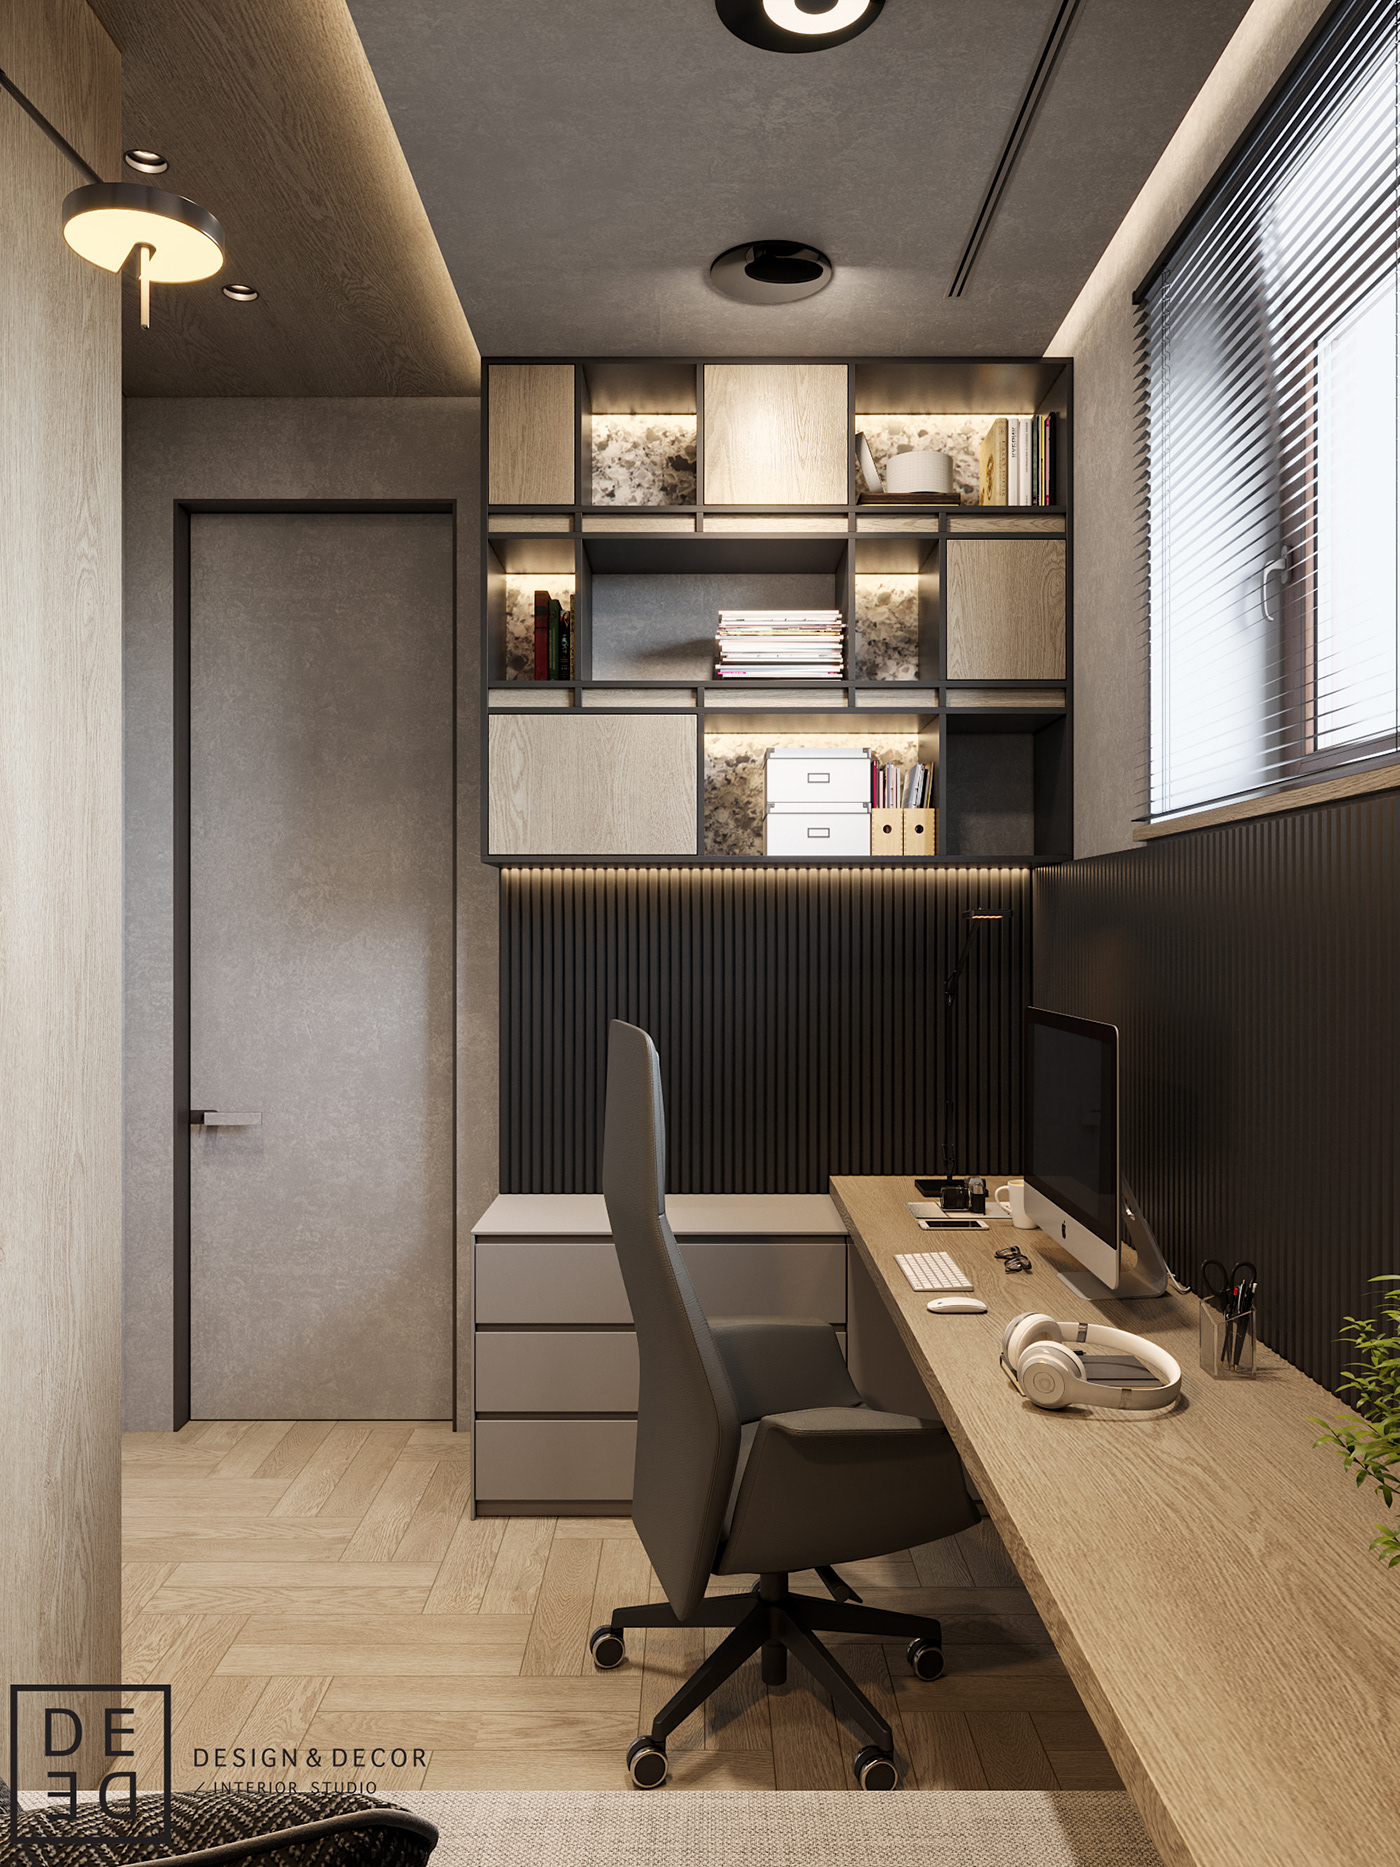 Interior INTRIORDESIGN architecture design 3ds max apartments DE&DE Interior Studio corona render  photoshop